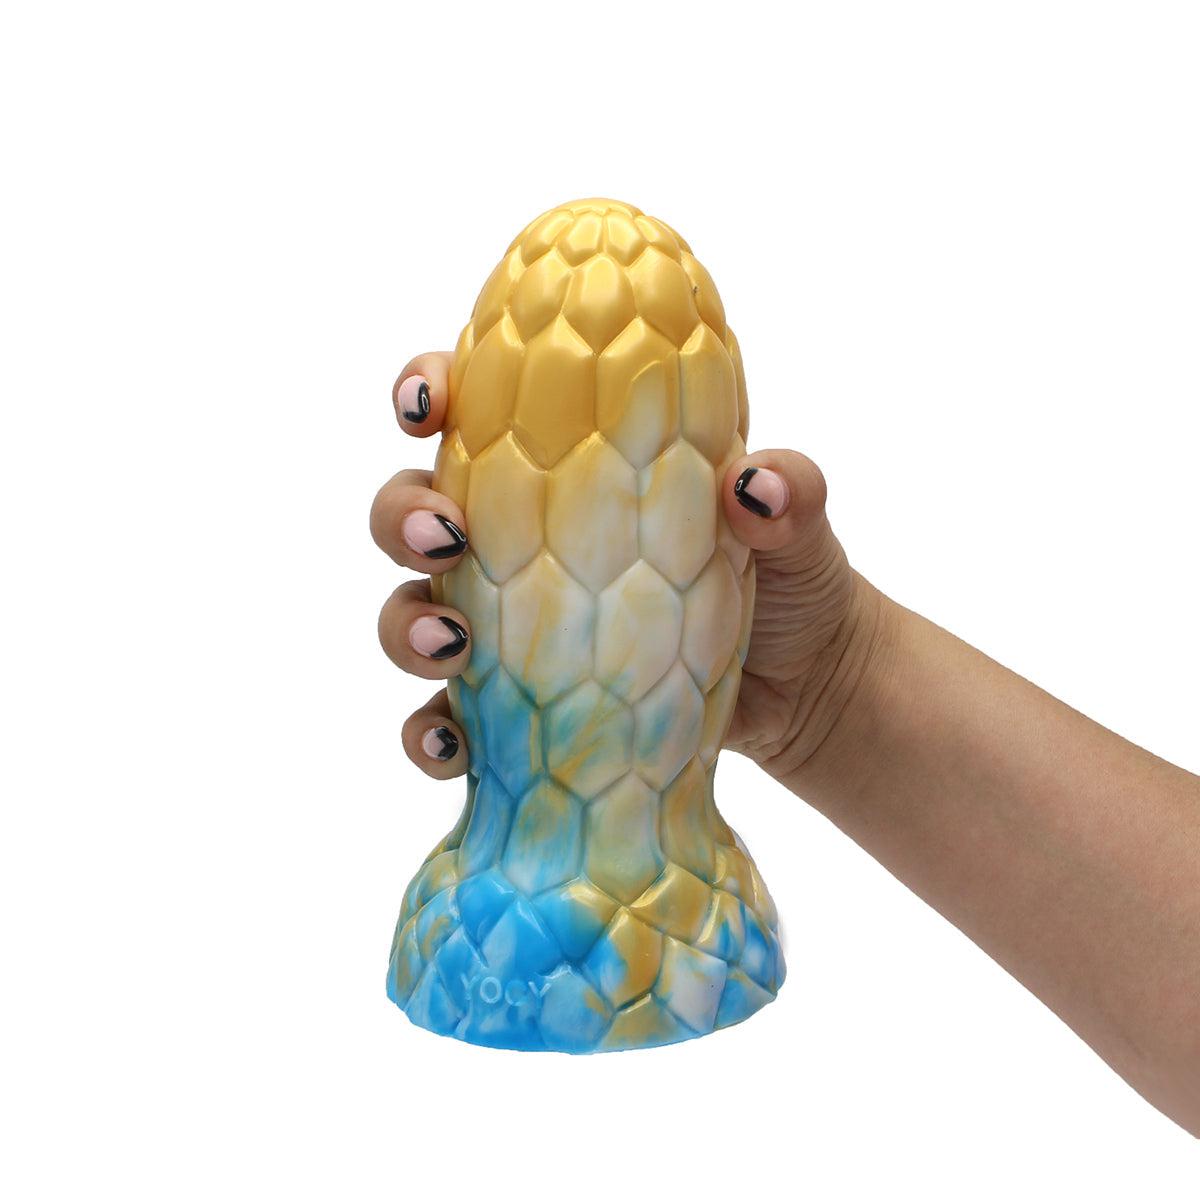 Kiotos Monstar - Buttplug - Alien Egg - 17.5 x 7.5 cm - Tie Dye Goud/Blauw-Erotiekvoordeel.nl